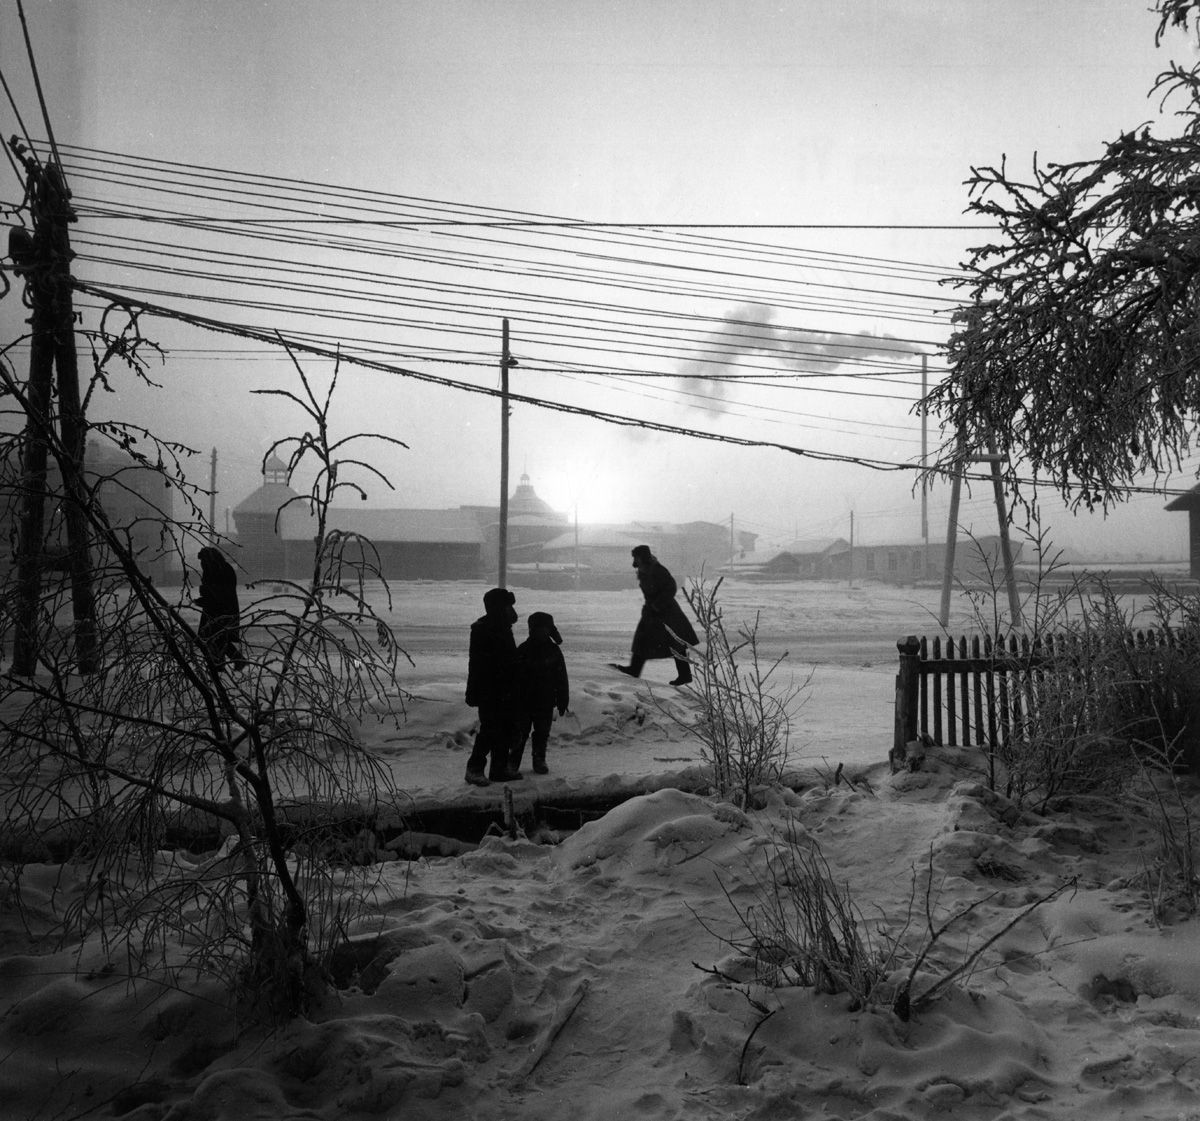 Якутск, 1964. Фотограф Марио Де Бьязи